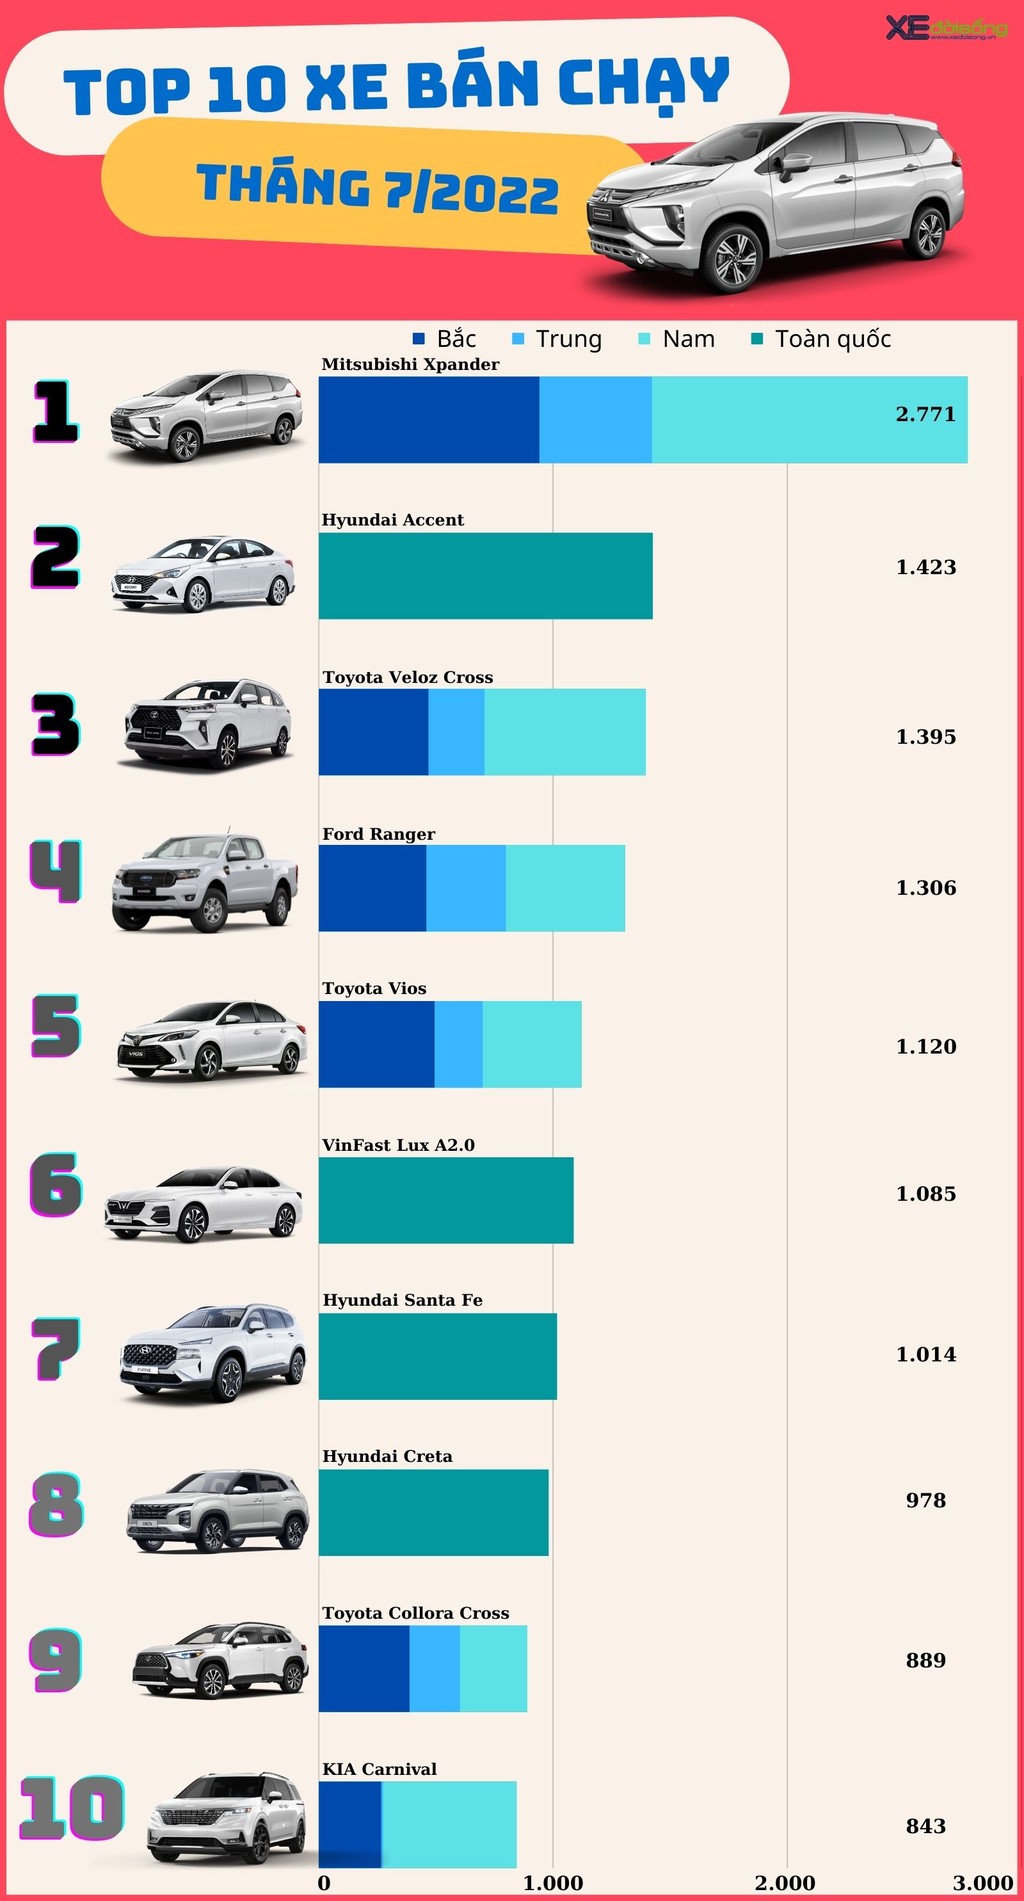 TOP 10 xe hơi bán chạy nhất Việt Nam tháng 7: Xpander bứt tốc bỏ xa đối thủ Veloz Cross ảnh 3